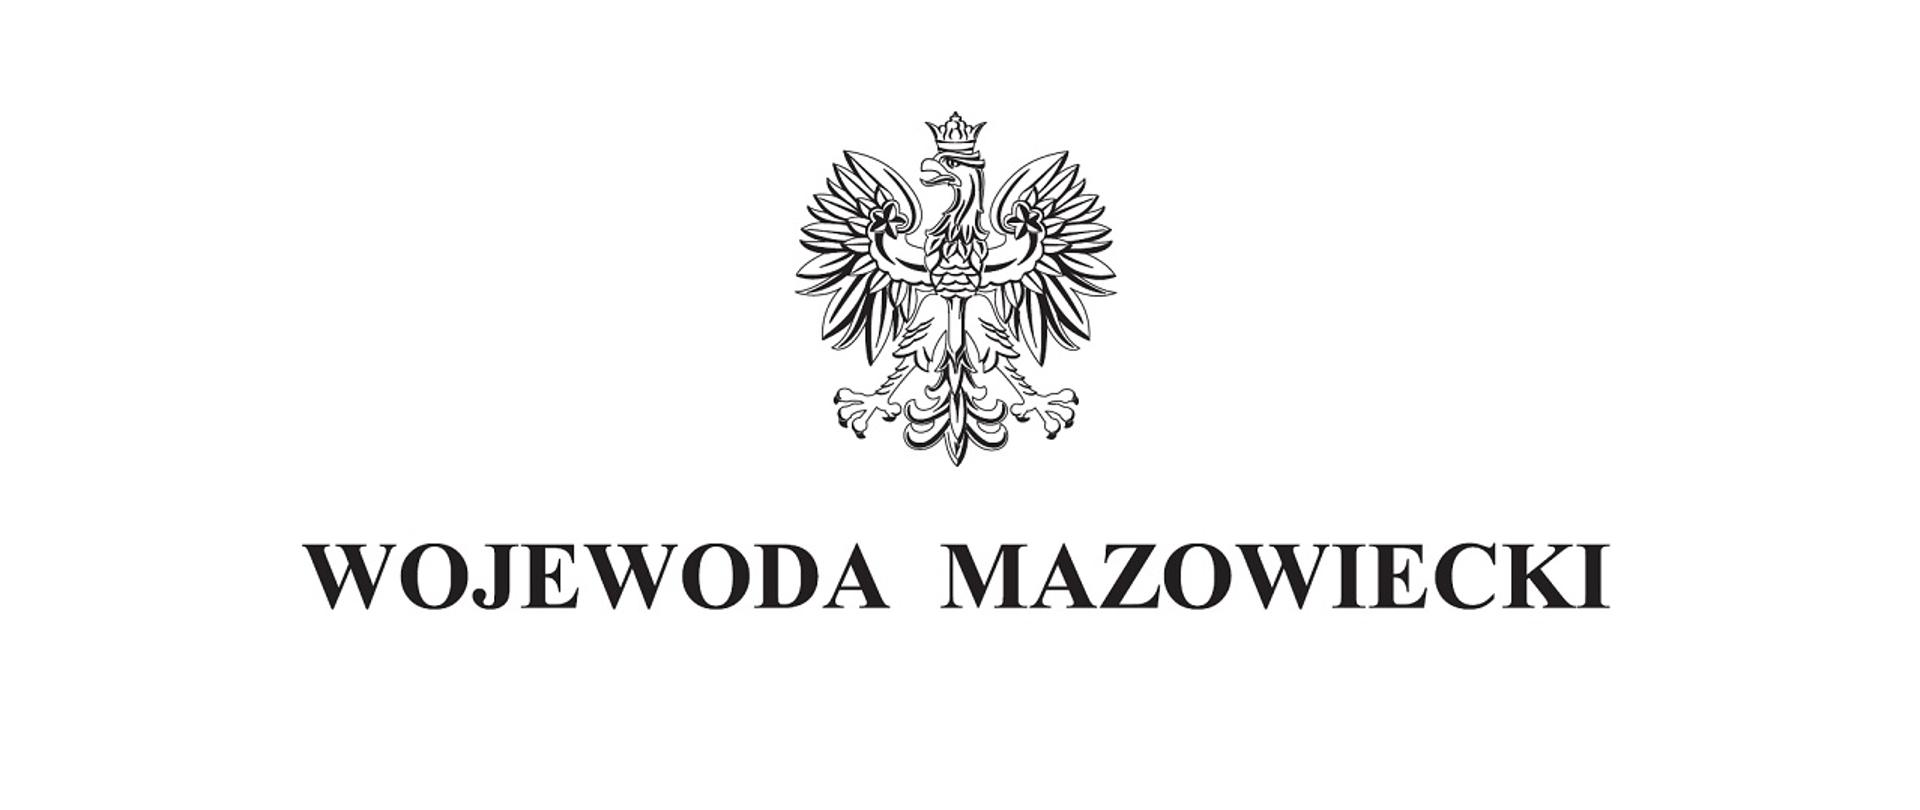 Zdjęcie przedstawia orła białego w koronie. Pod spodem znajduje się napis Wojewoda Mazowiecki.